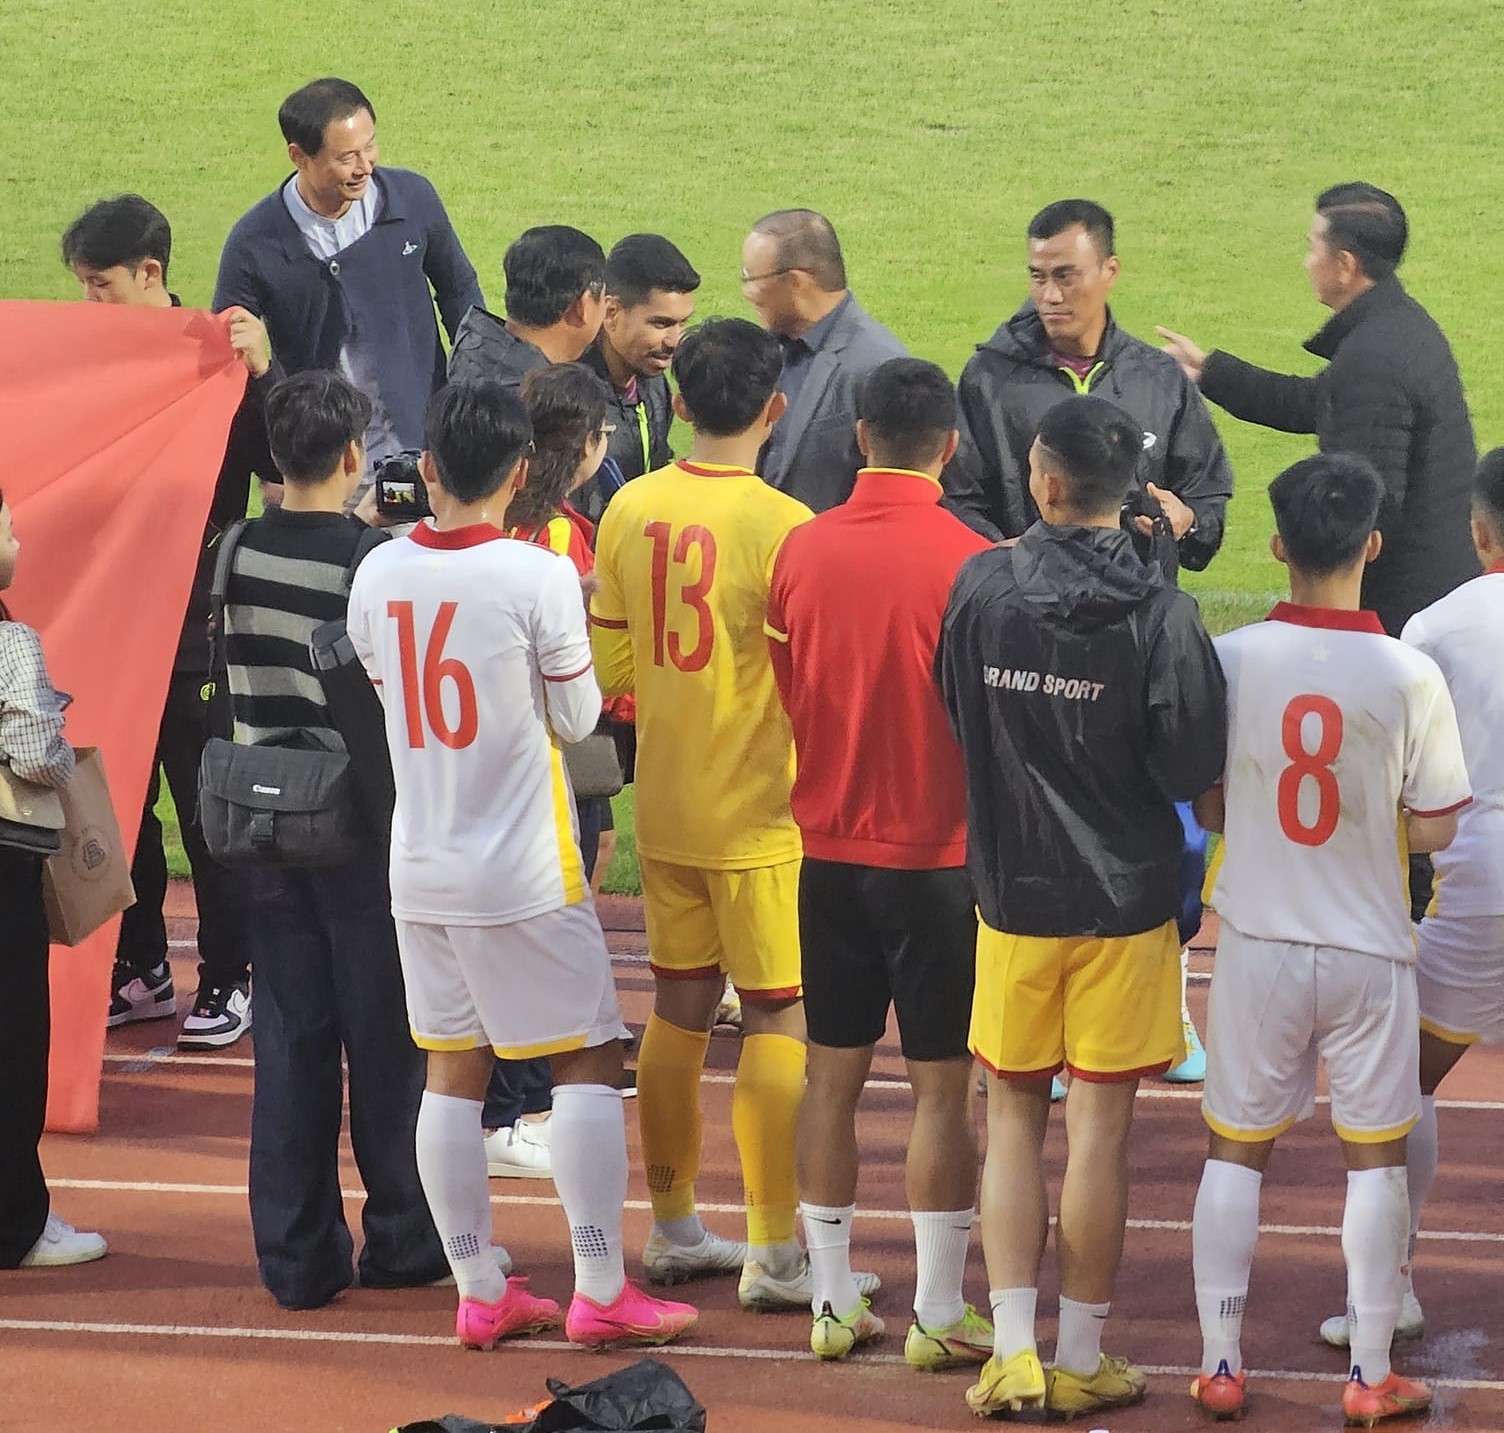 HLV Park Hang-seo bất ngờ xuất hiện theo dõi U18 Việt Nam đấu với Hàn Quốc - Ảnh 1